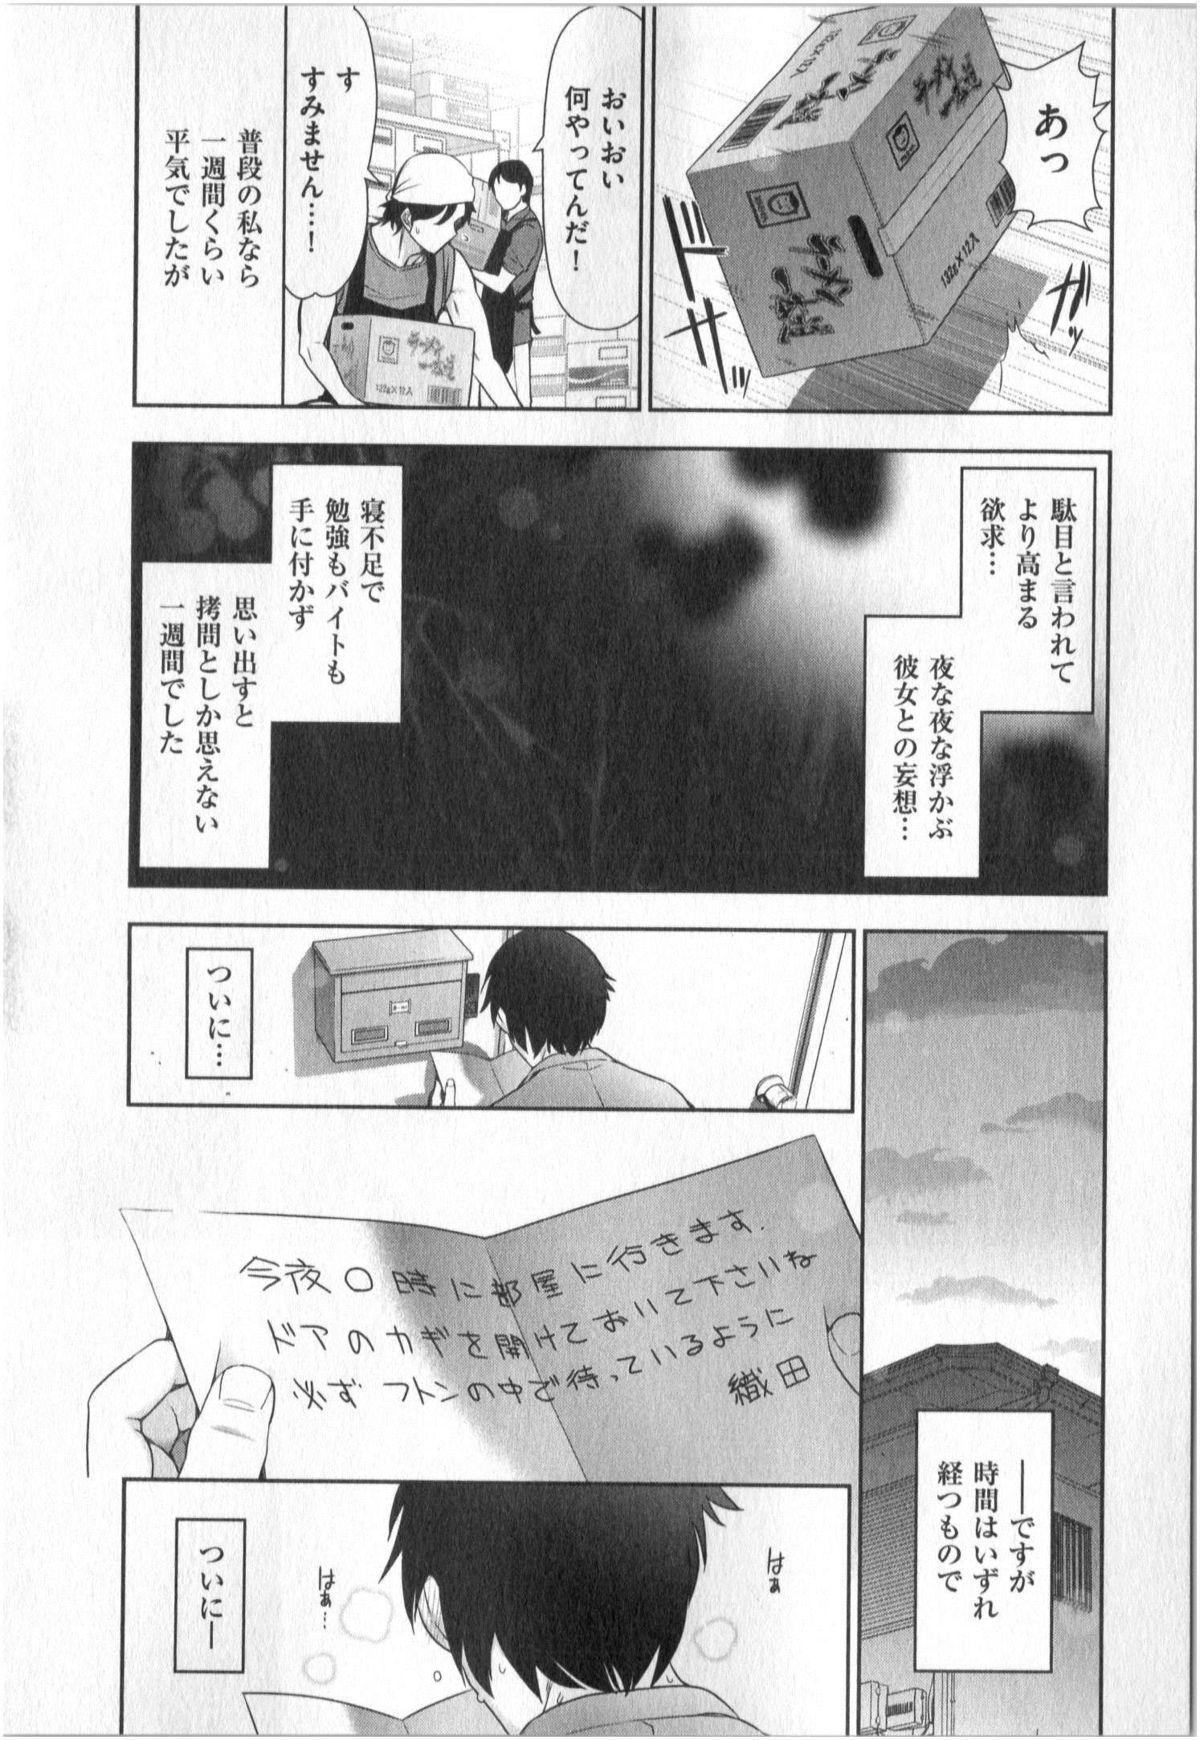 Yonimo Ecchi na Toshidensetsu vol. 01 35